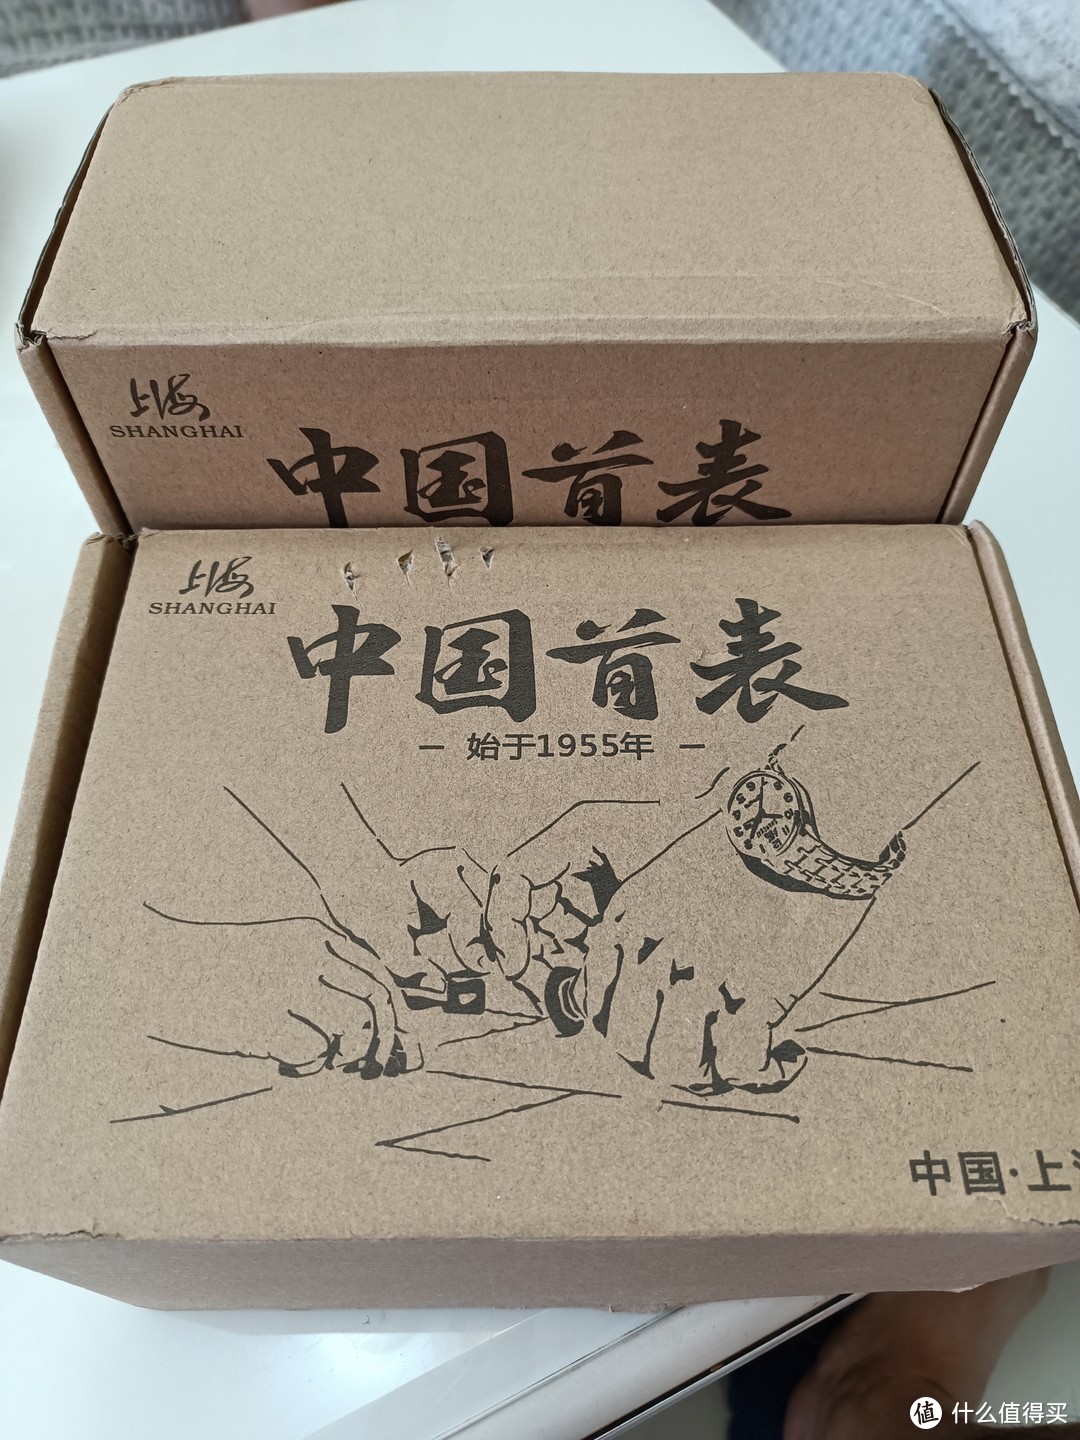 重点推荐:第一块自购表—上海810开箱及试用感受